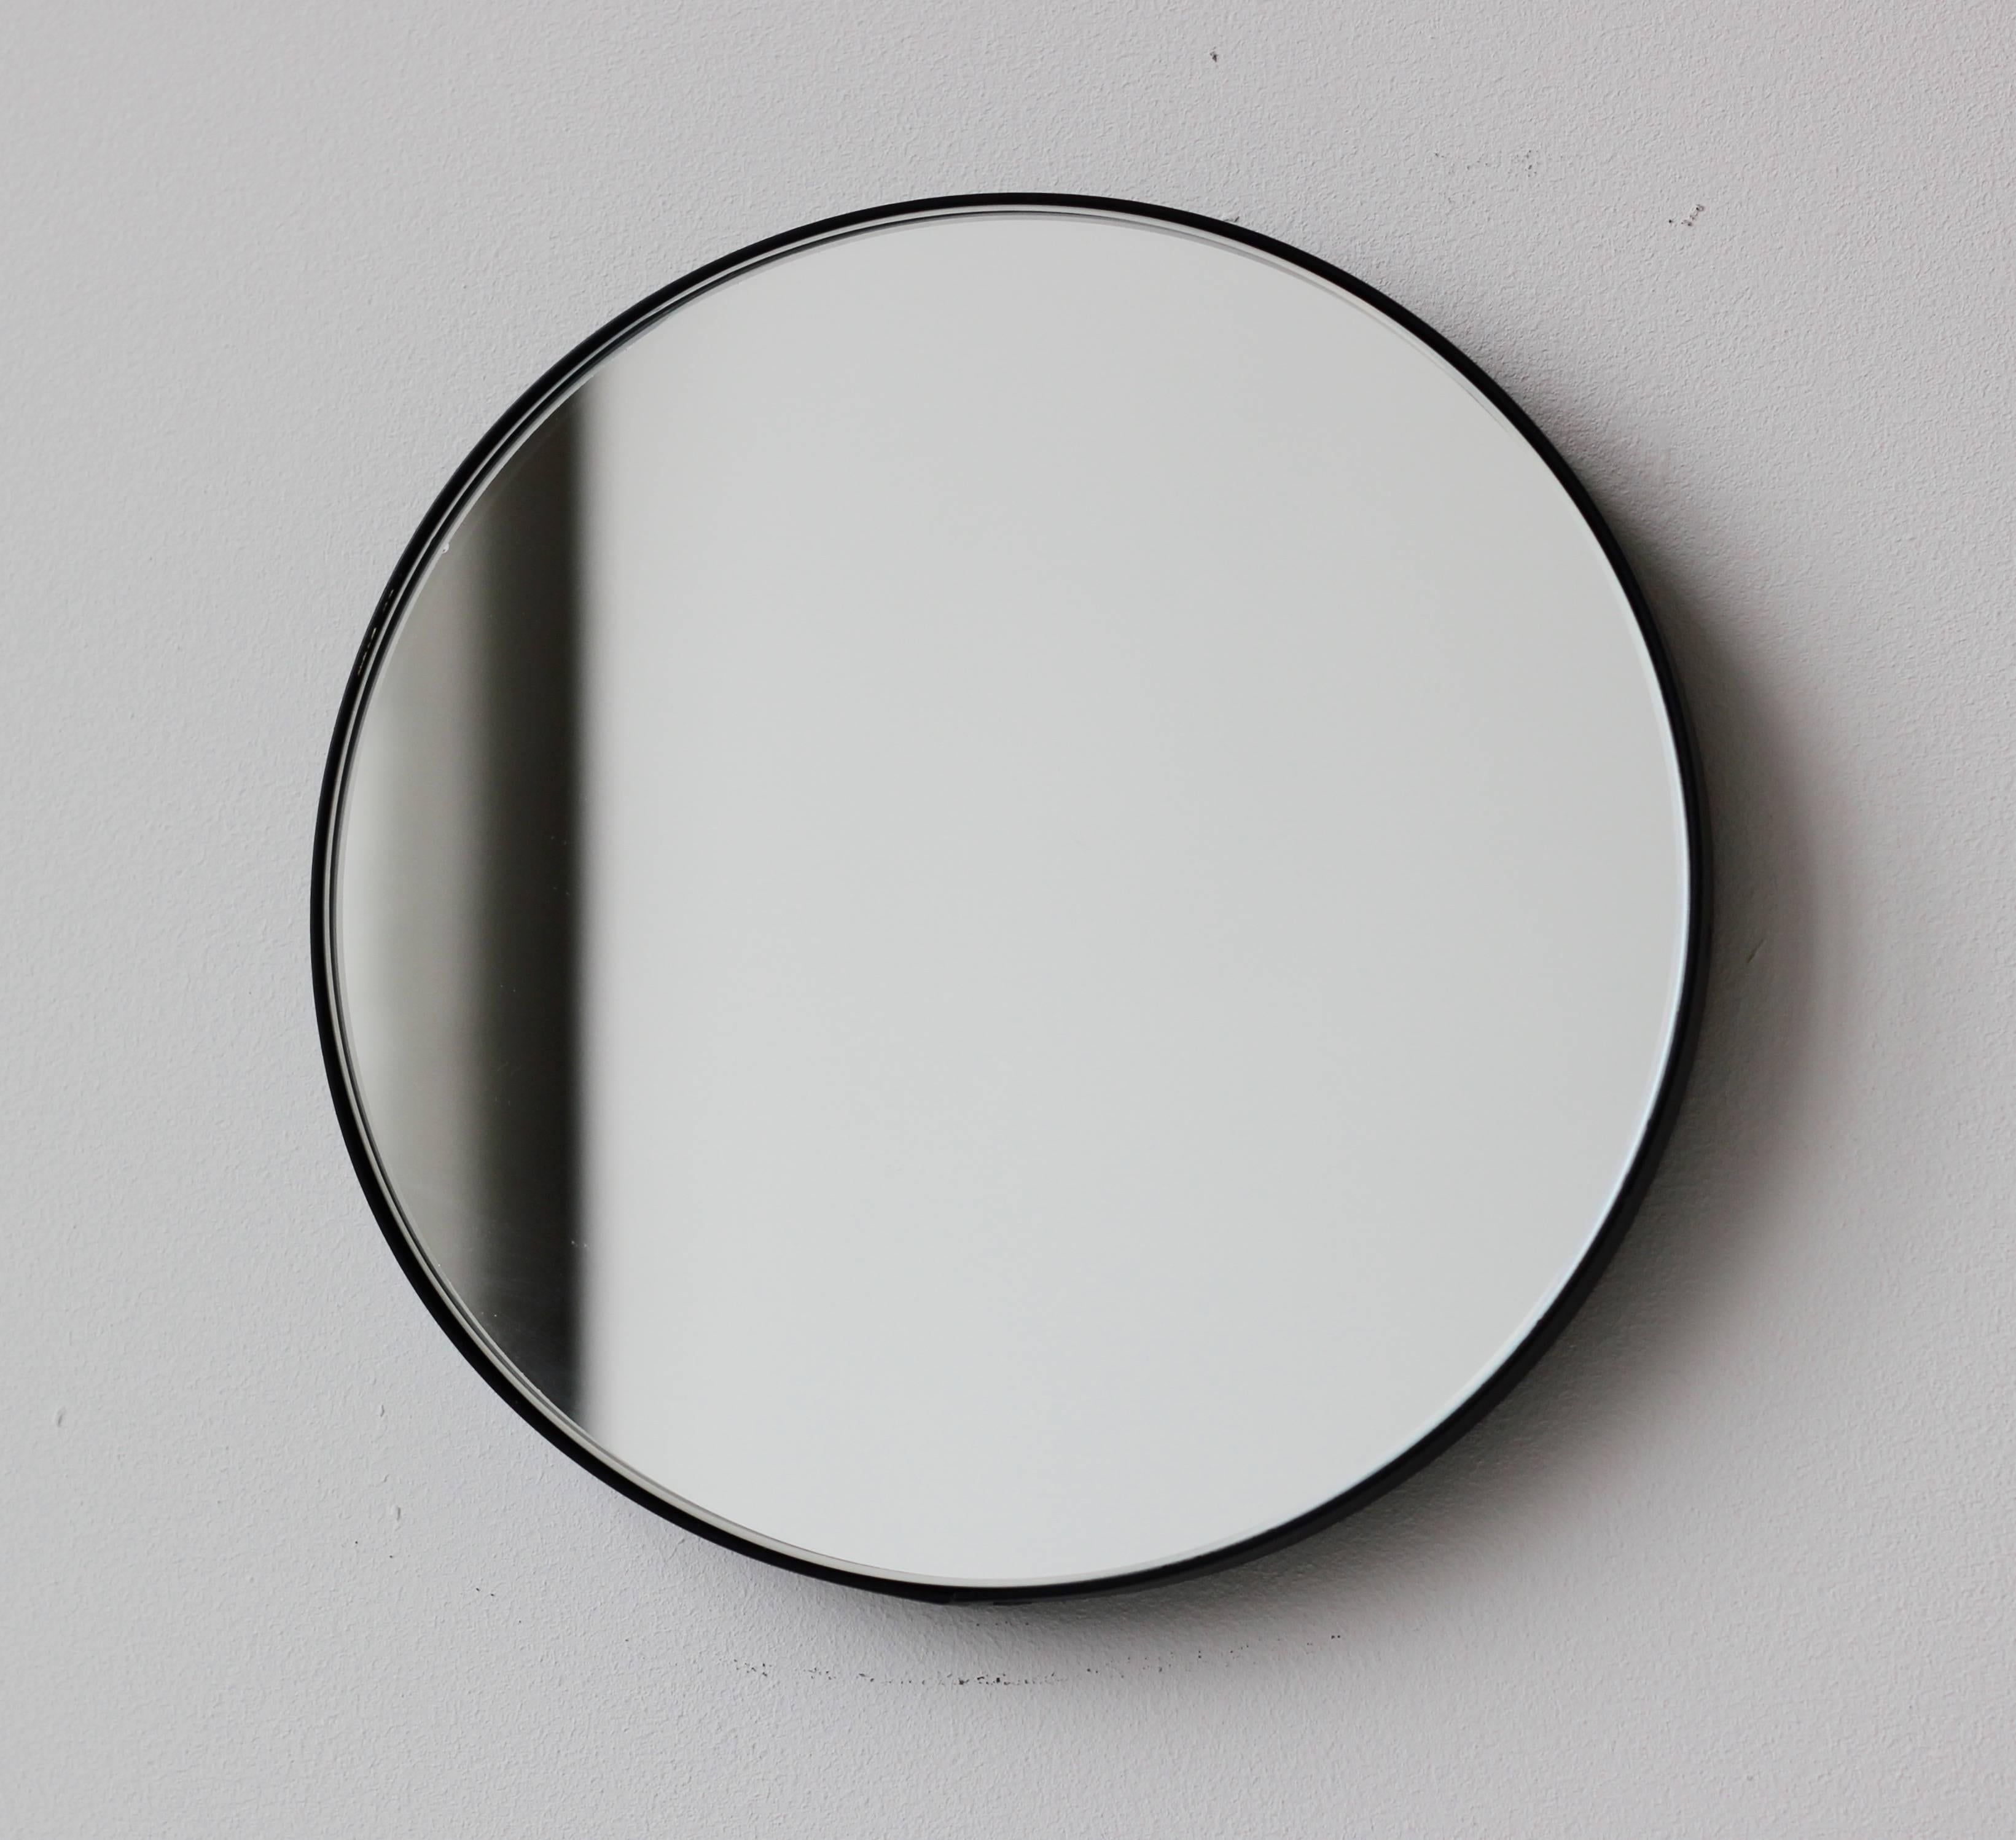 Miroir rond minimaliste Orbis™ doté d'un élégant cadre en aluminium peint par poudrage en noir. Conçu et fabriqué à la main à Londres, au Royaume-Uni.

Les miroirs de taille moyenne, grande et extra-large (60, 80 et 100 cm) sont équipés d'un